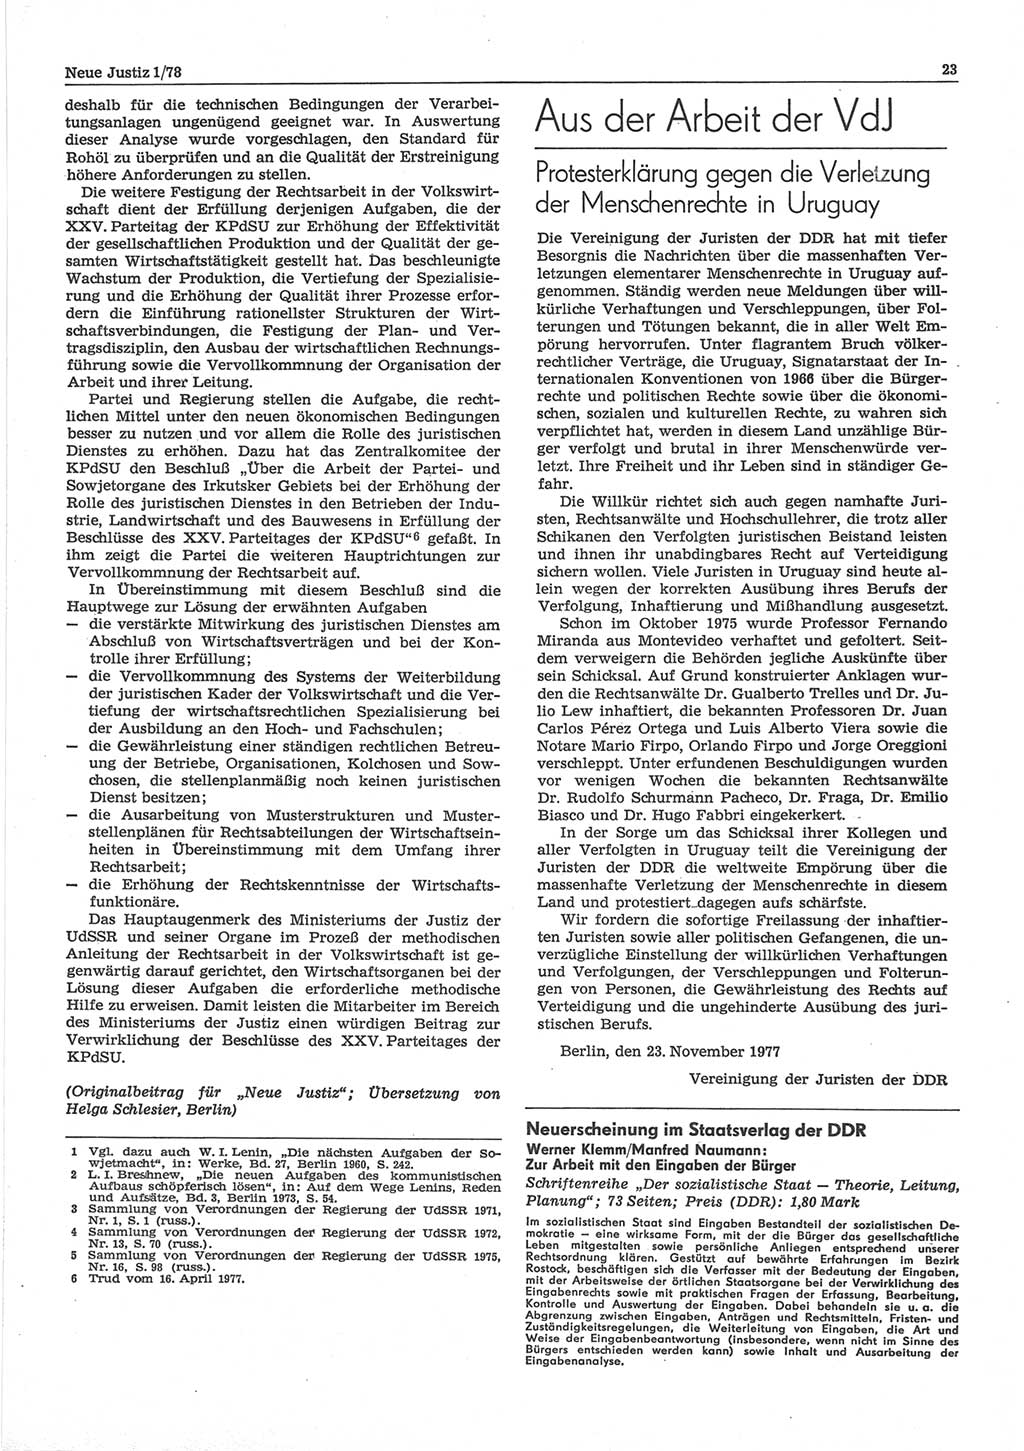 Neue Justiz (NJ), Zeitschrift für sozialistisches Recht und Gesetzlichkeit [Deutsche Demokratische Republik (DDR)], 32. Jahrgang 1978, Seite 23 (NJ DDR 1978, S. 23)